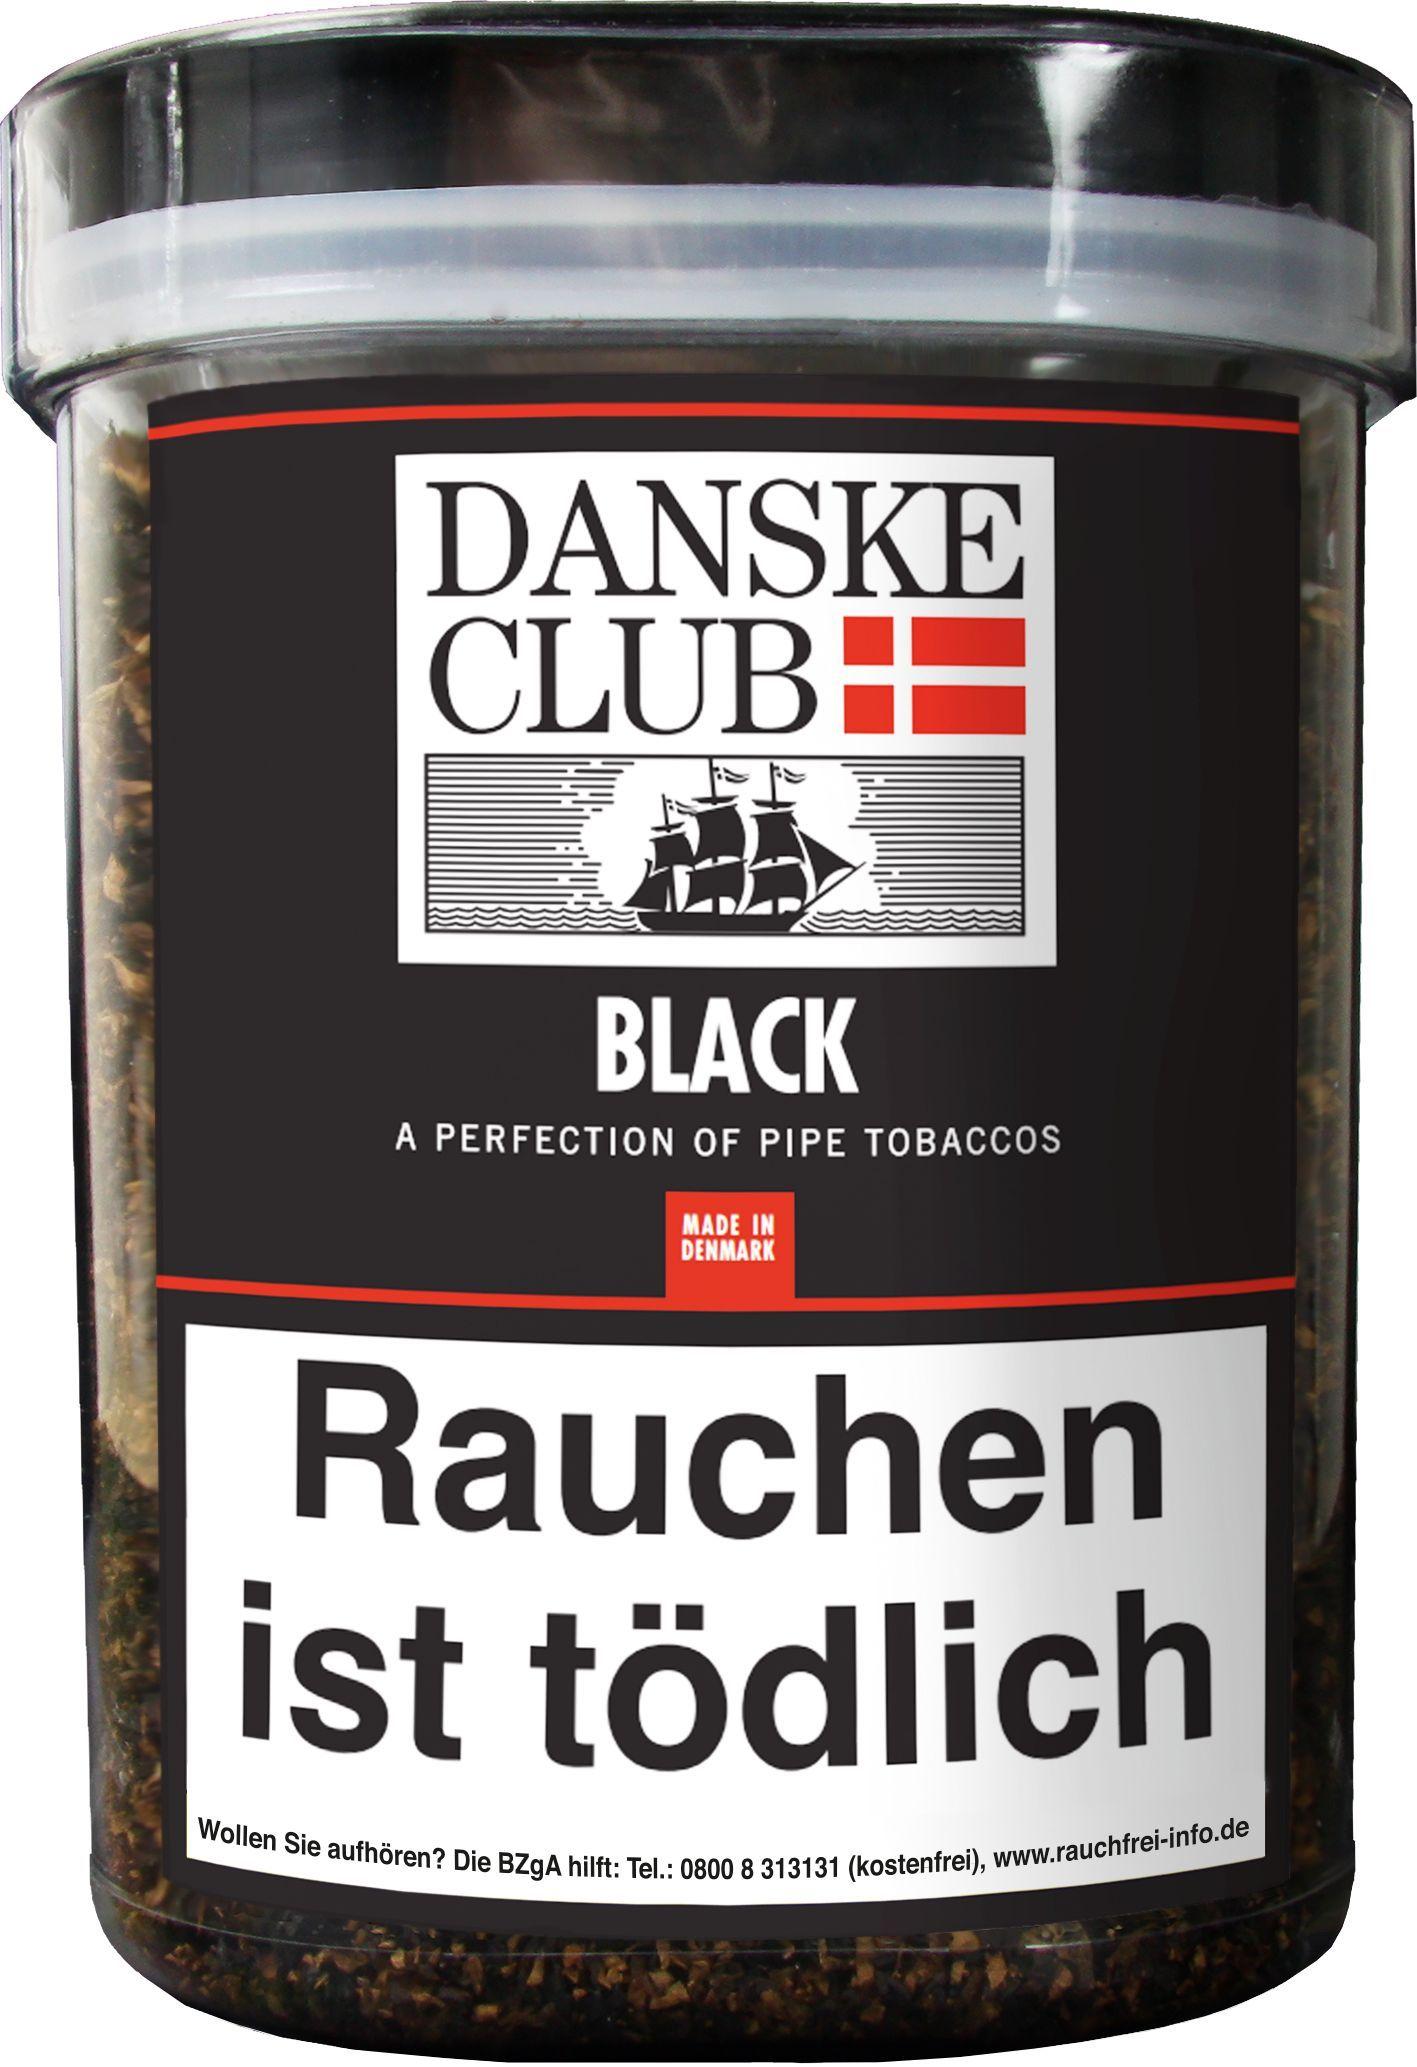 Danske Club Pfeifentabak Black 1 Dose